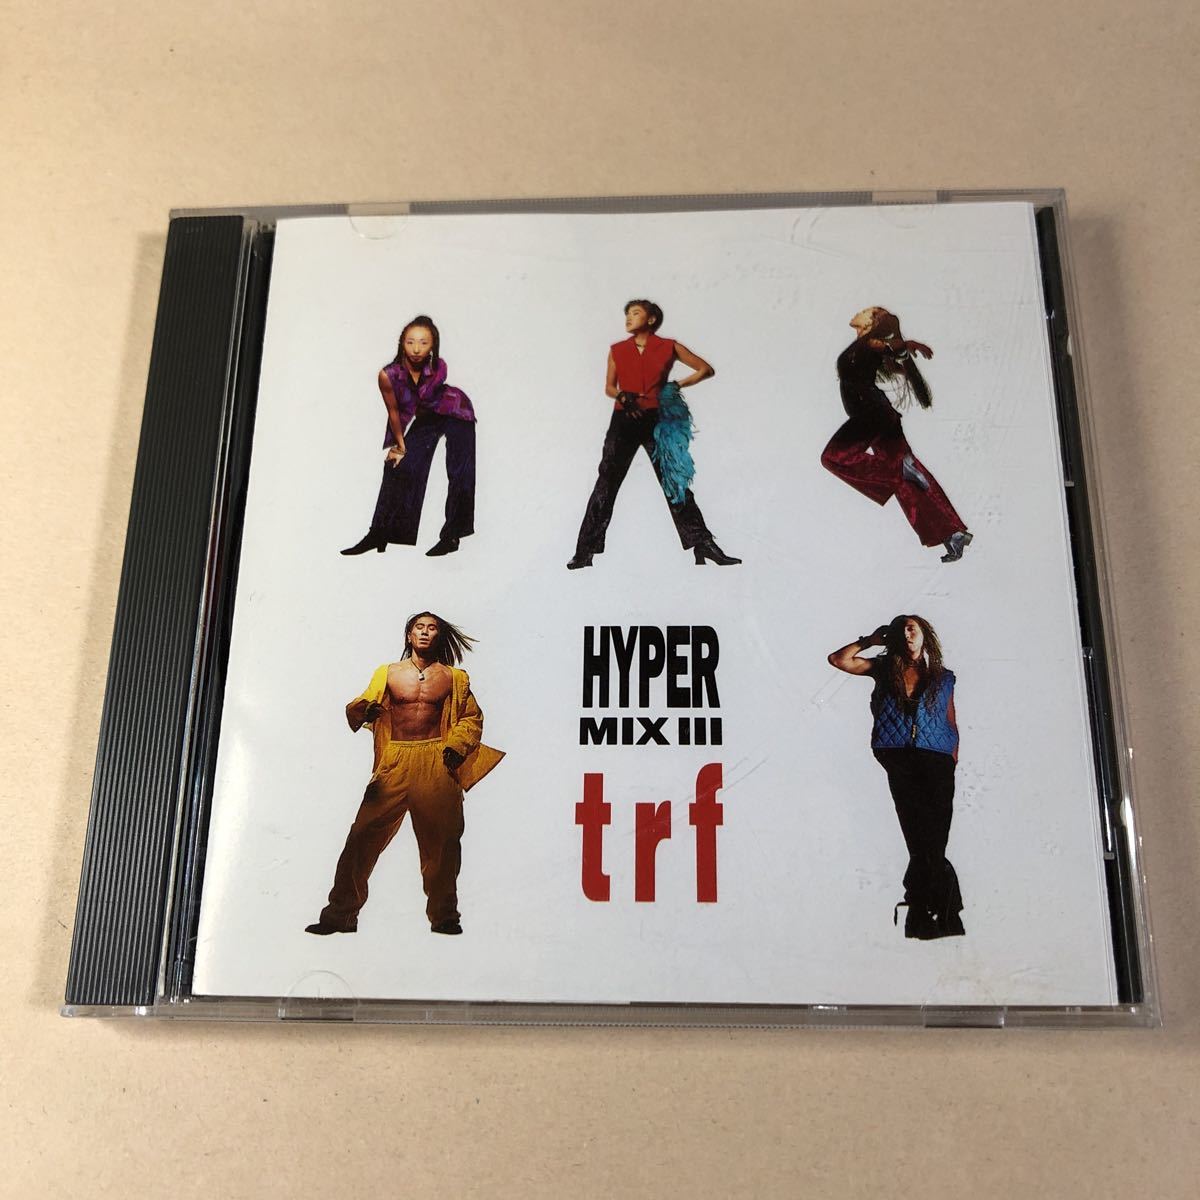 格安 店内限界値引き中 セルフラッピング無料 TRF 1CD HYPER MIX III bigportal.ba bigportal.ba